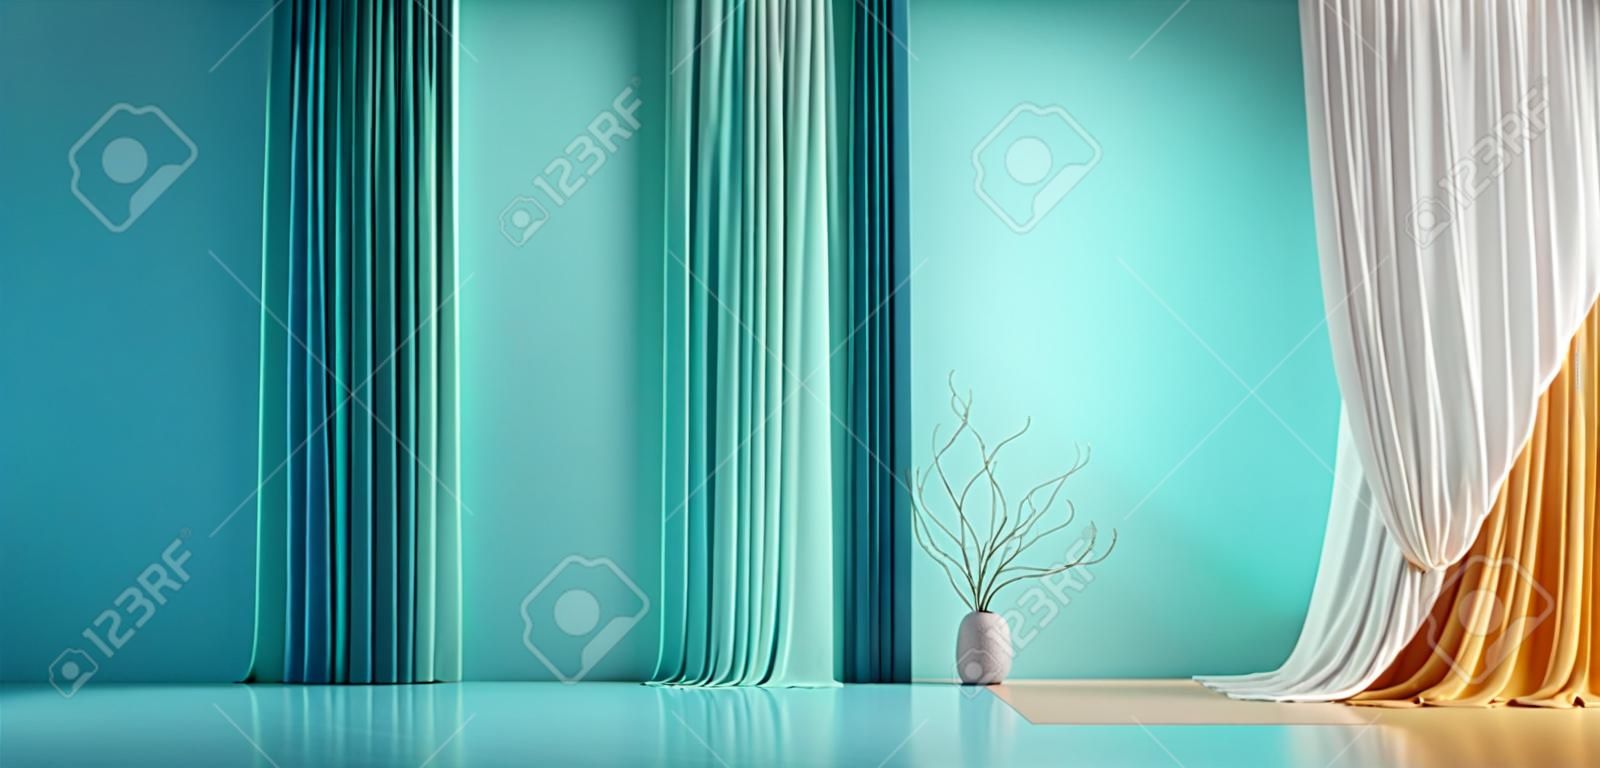 Parete vuota verde blu turchese pastello in camera con tendaggi di seta colorata. mock up modello per la presentazione del prodotto. soggiorno, galleria, studio, concetto di ufficio. rappresentazione 3d